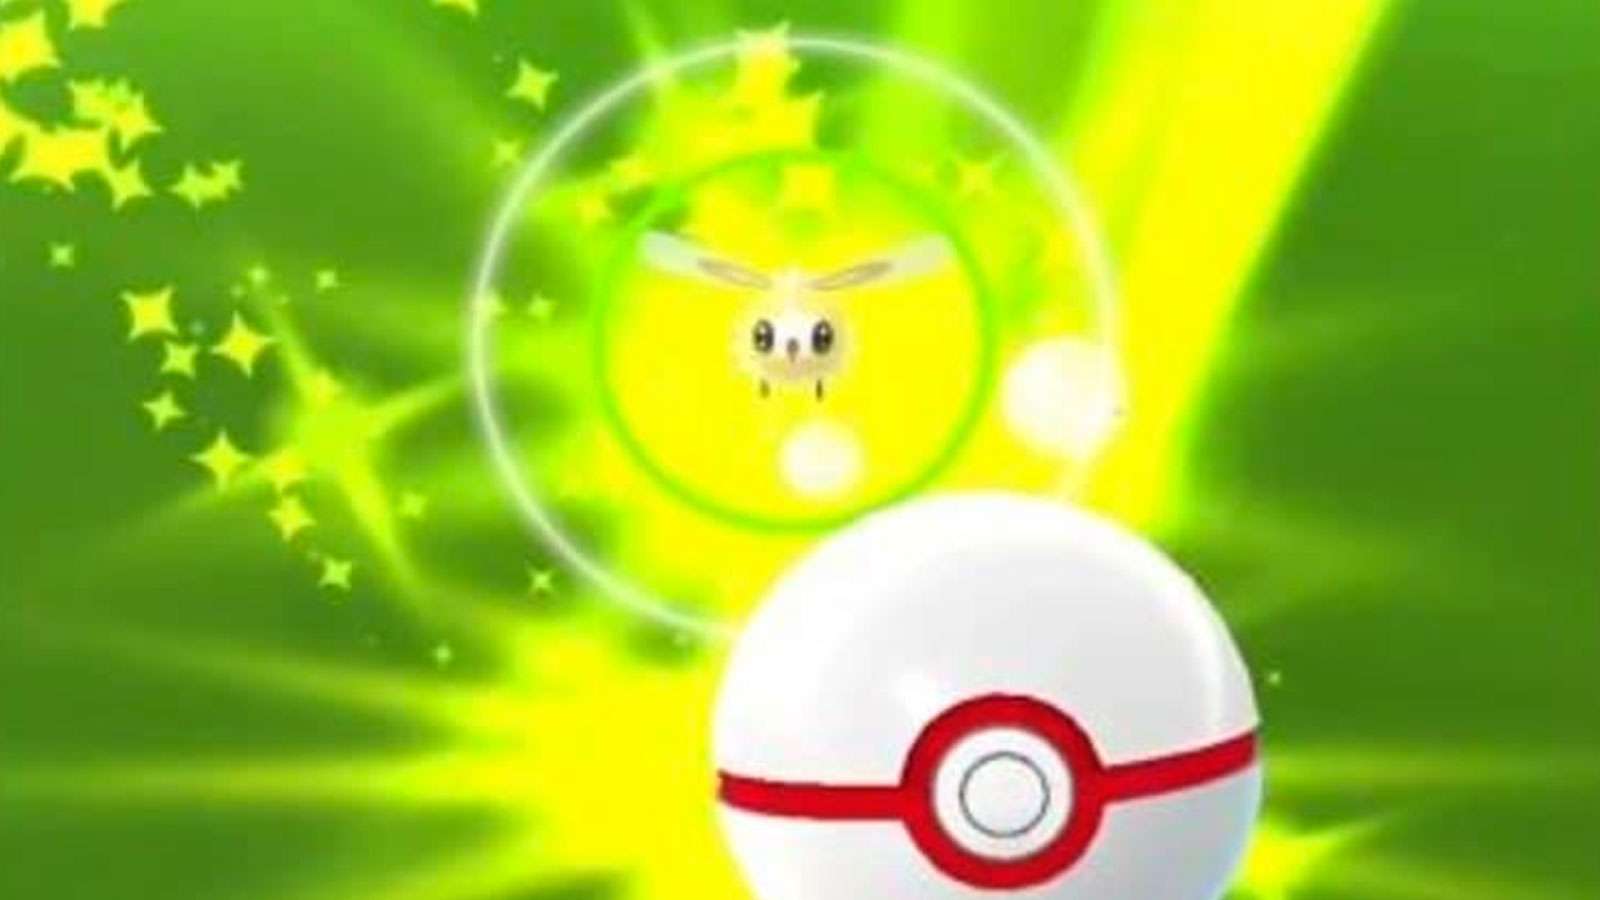 Une capture dans Pokémon Go